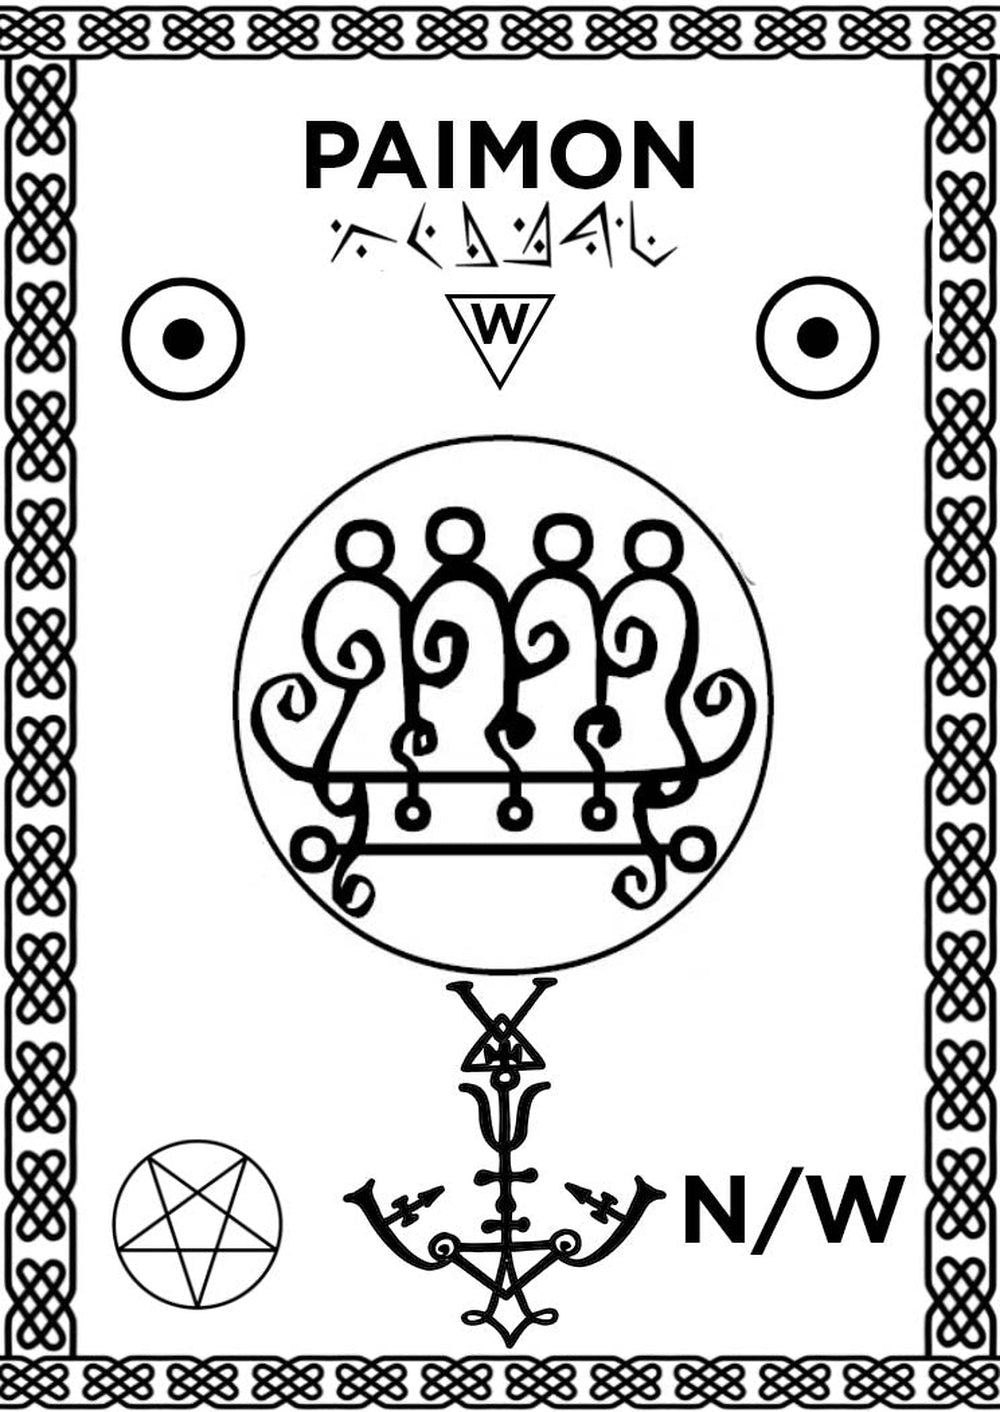 家庭祭壇巫術 2 的調用對齊墊與 Paimon 的印記